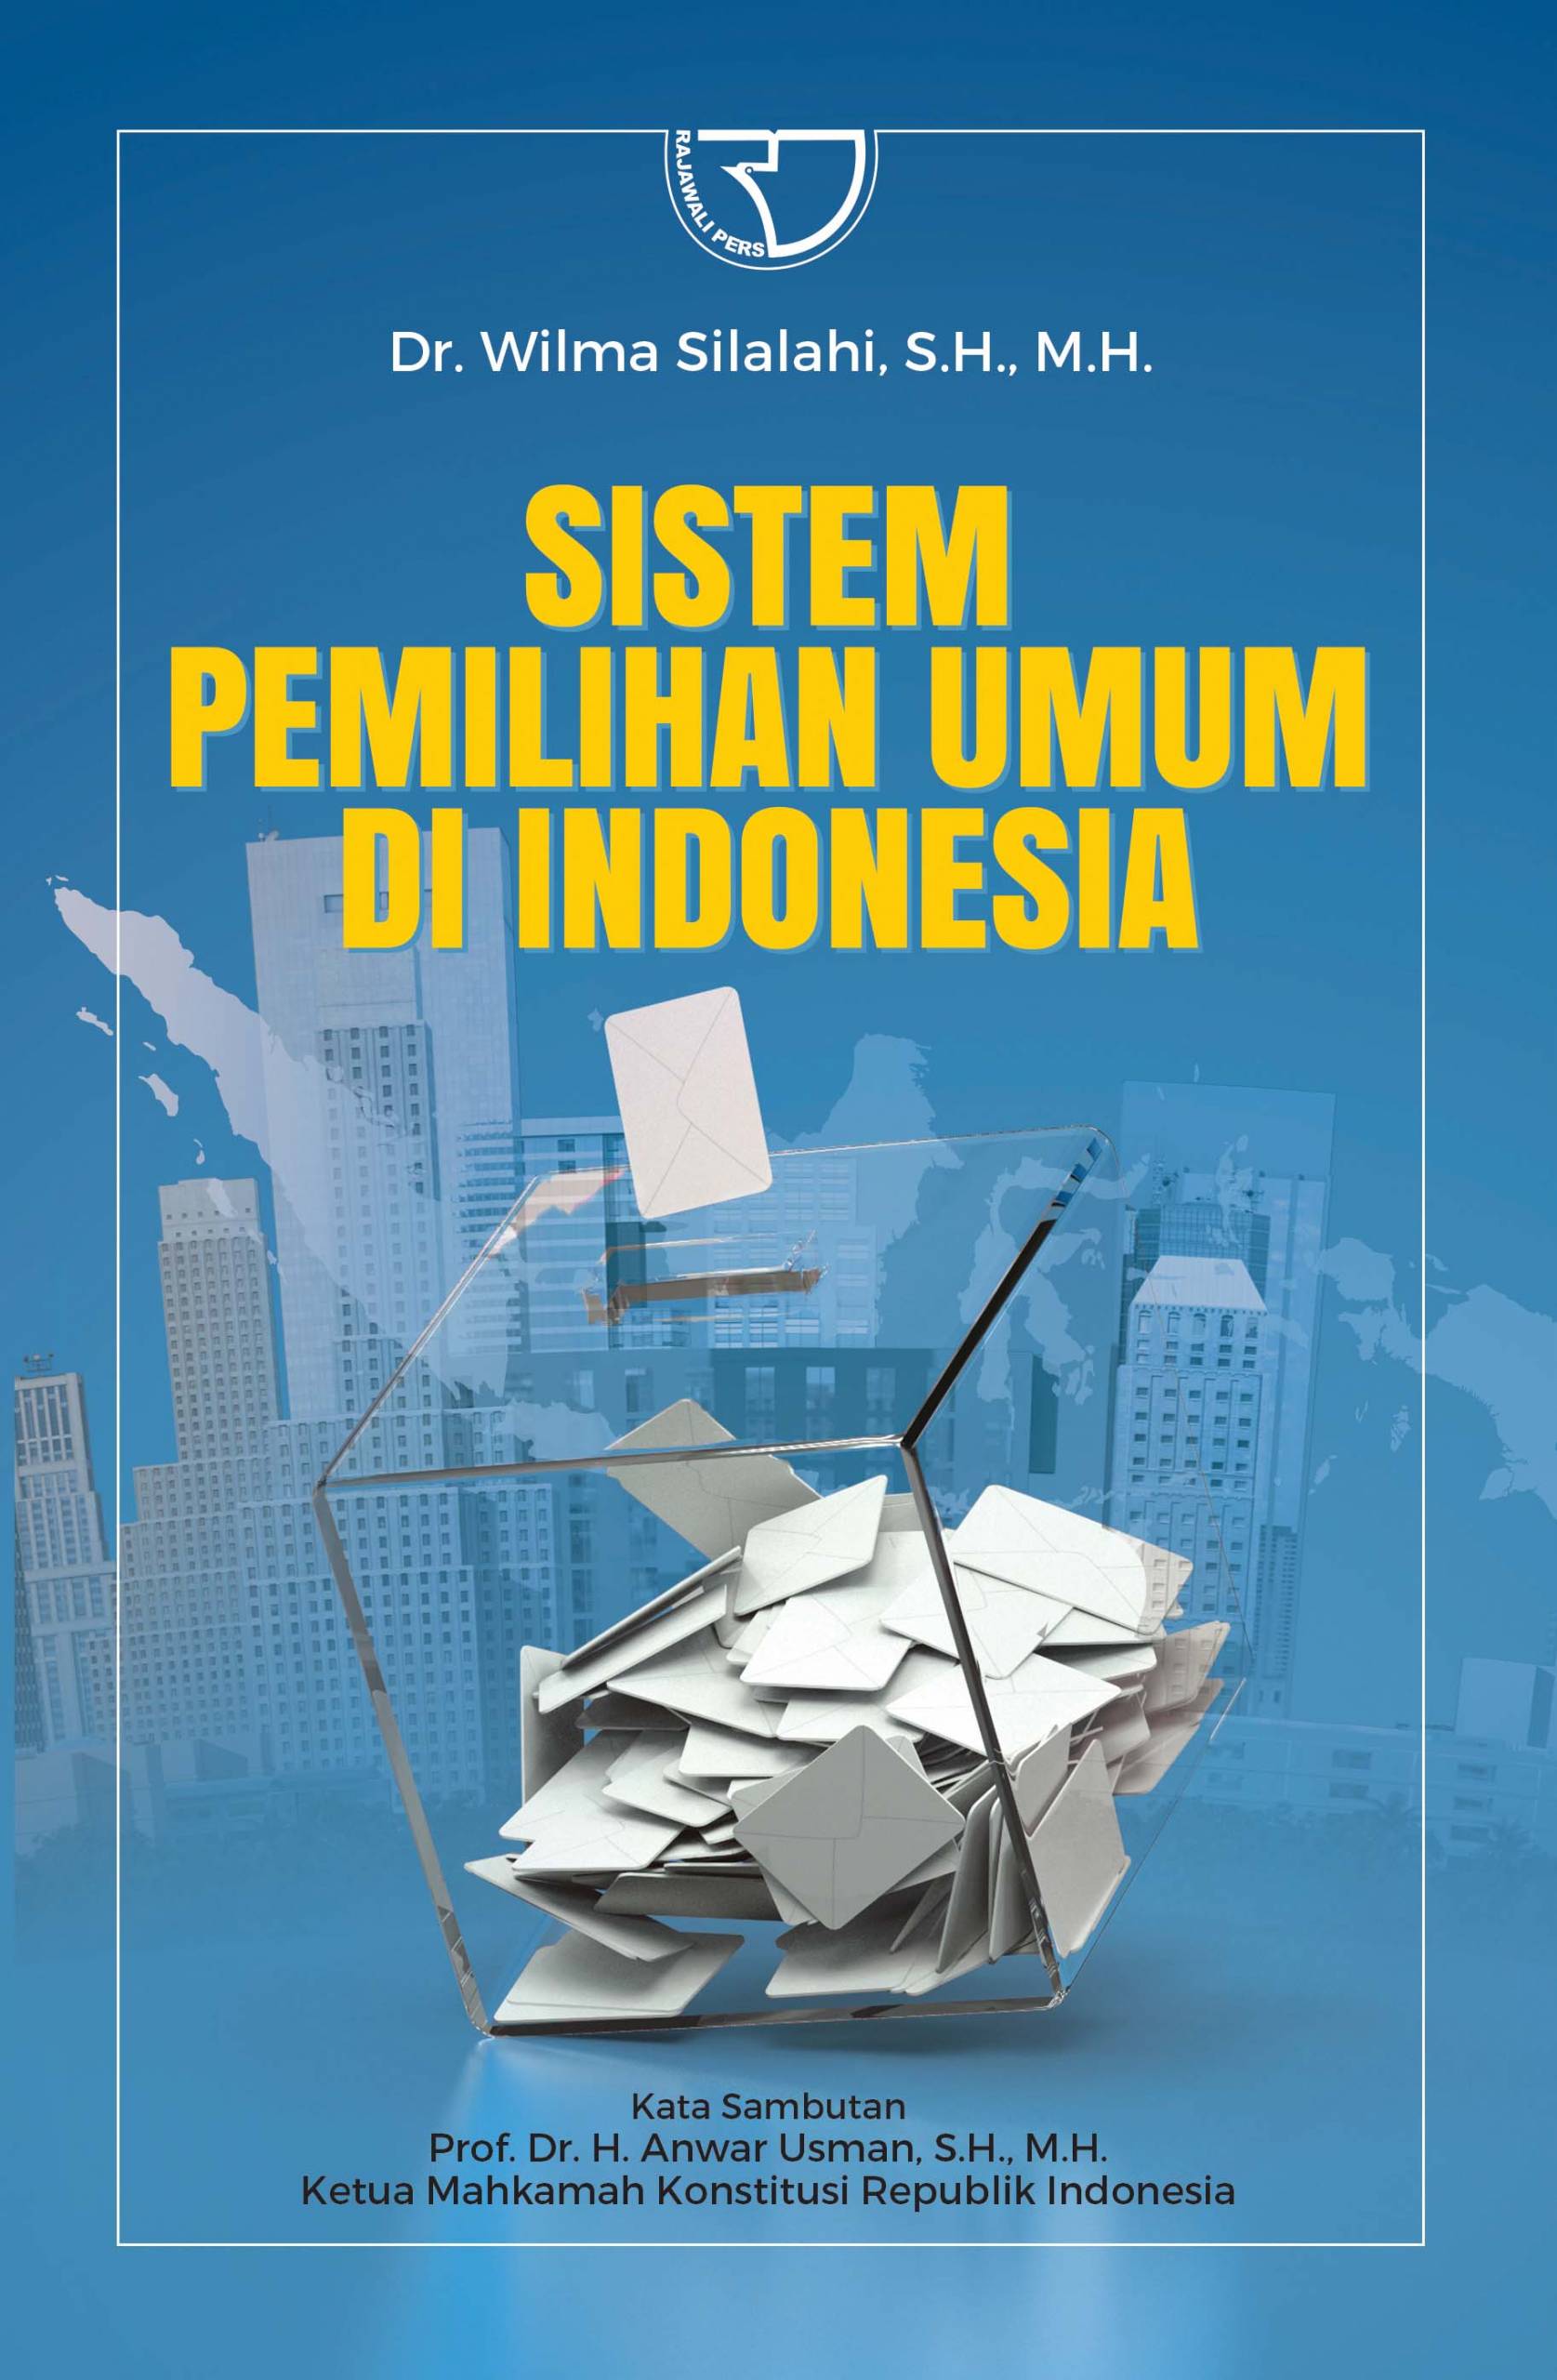 Sitem pemilihan umum di Indonesia